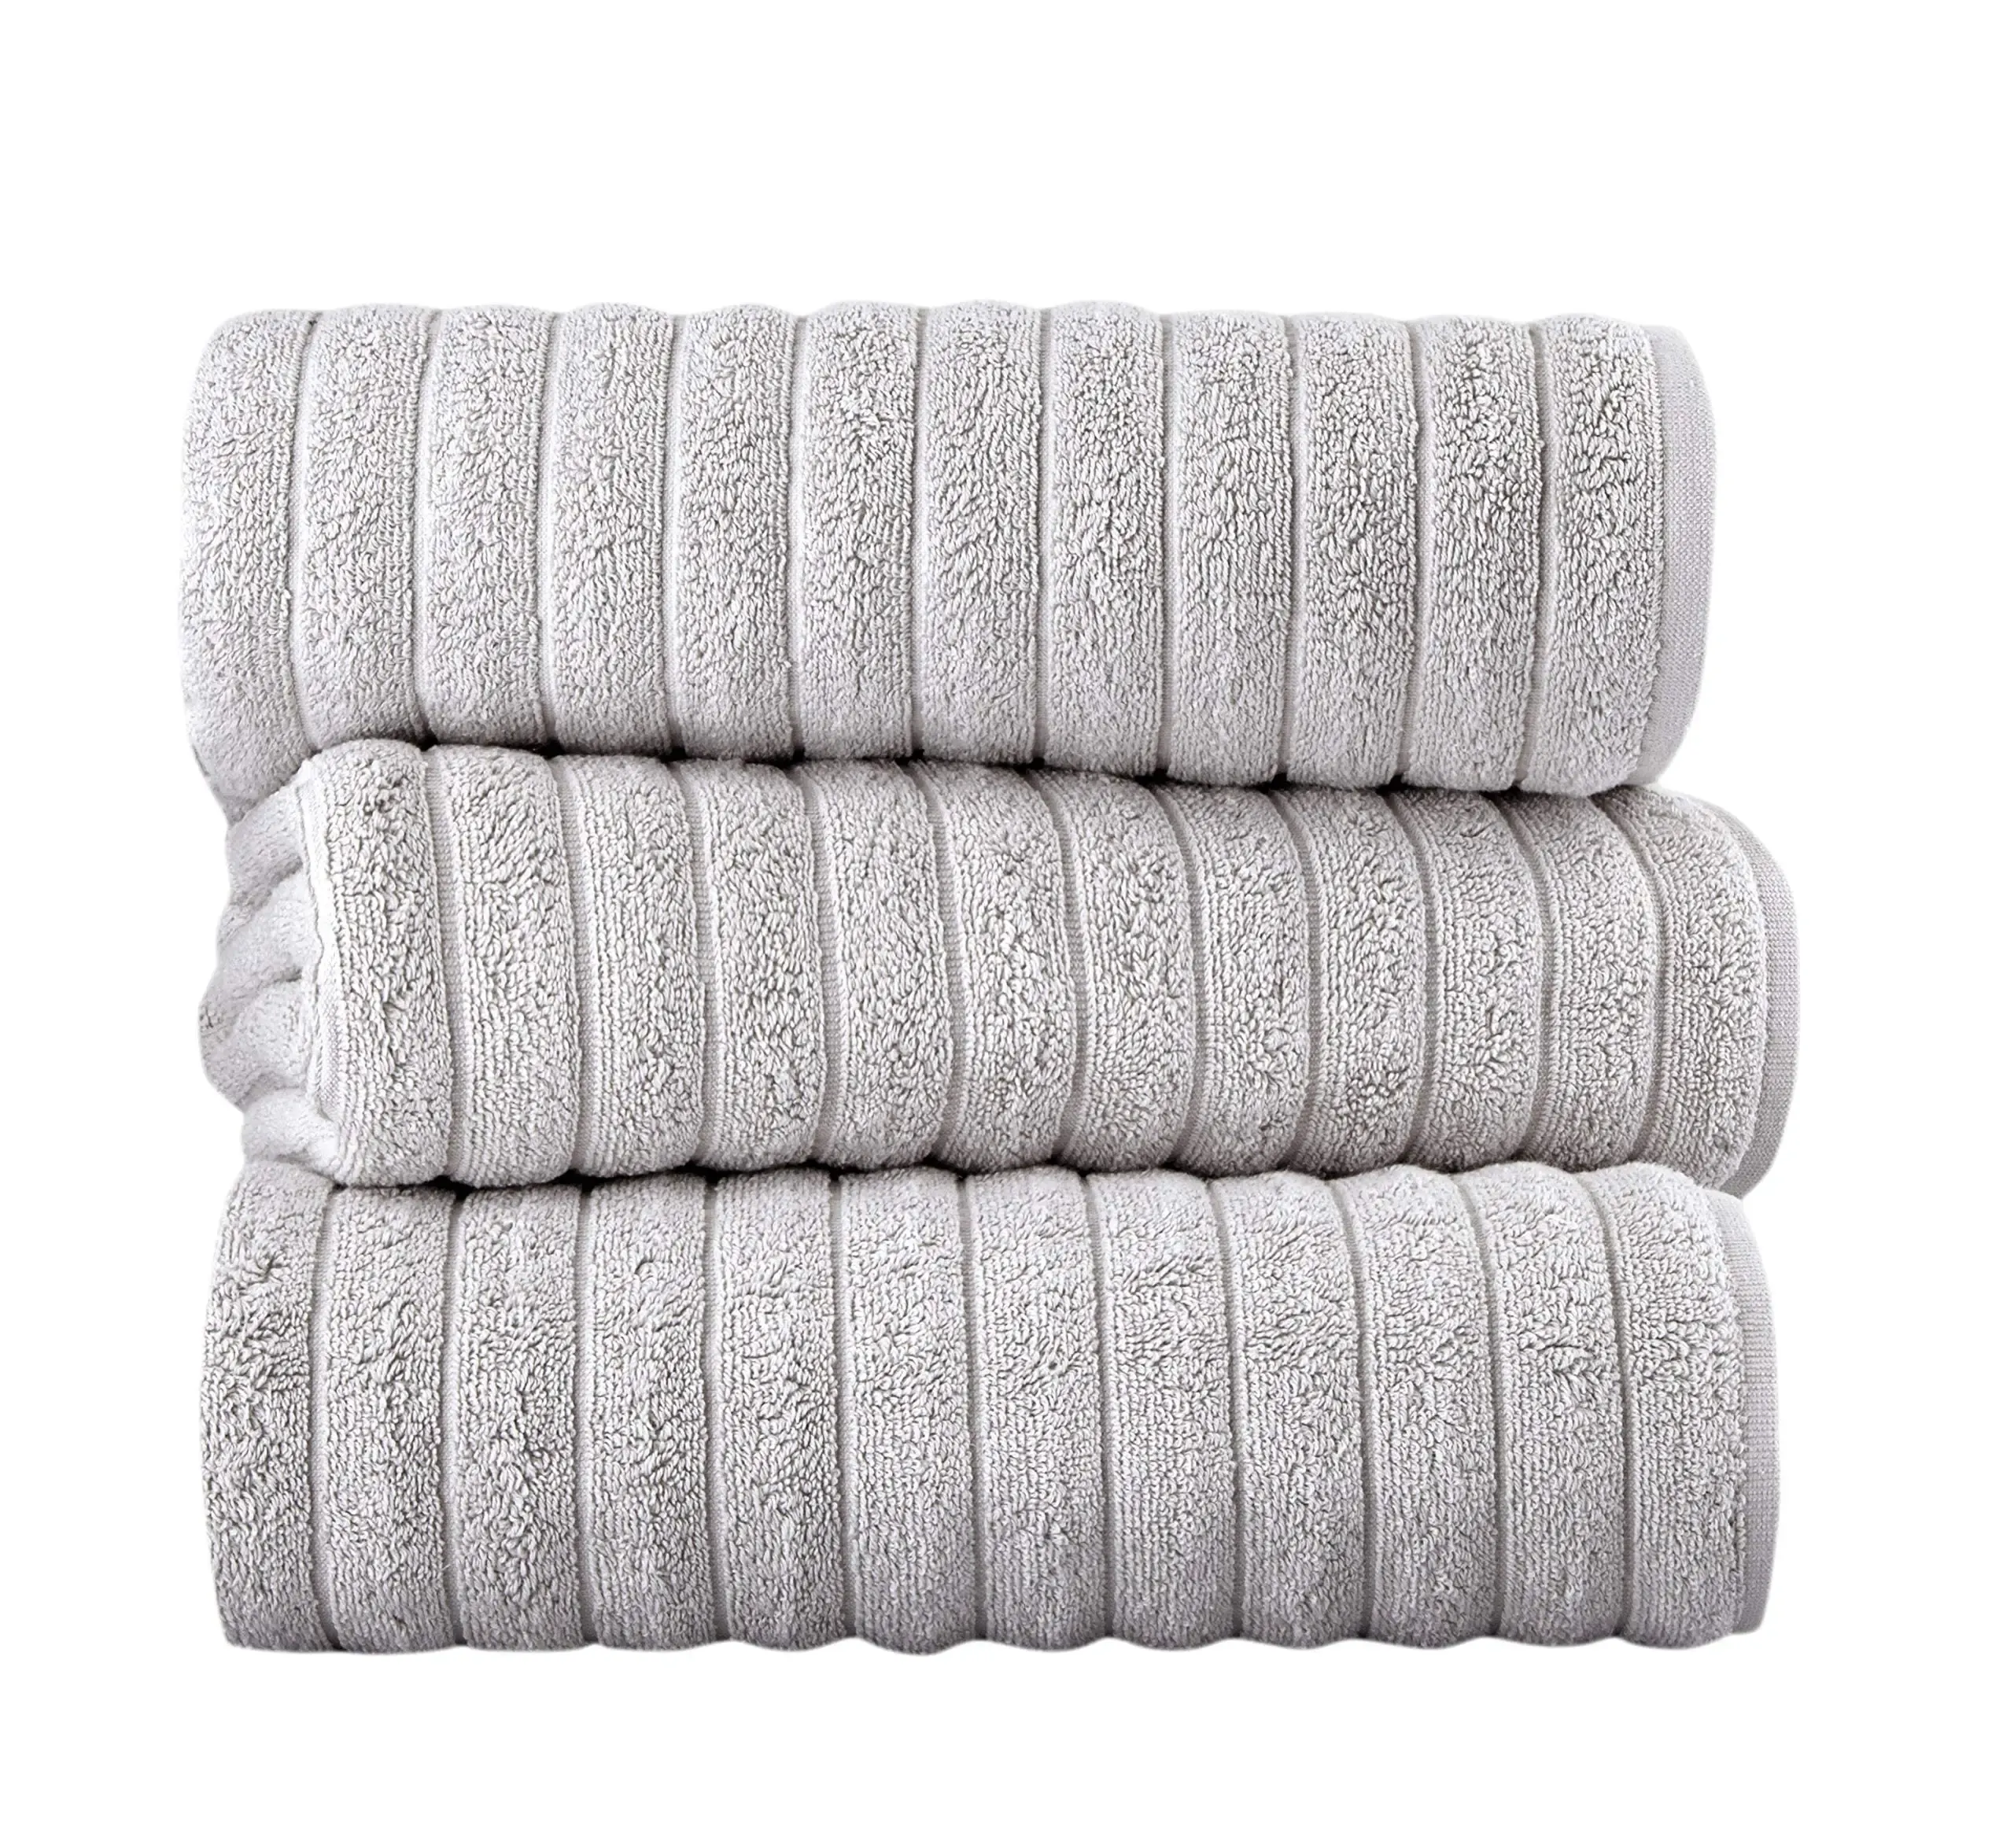 Serviettes à serviette turque classique, extra grande, baignoire en coton de qualité supérieure, épaisse et absorbante, serviettes de salle de bain de luxe et de luxe, 27x55 pouces